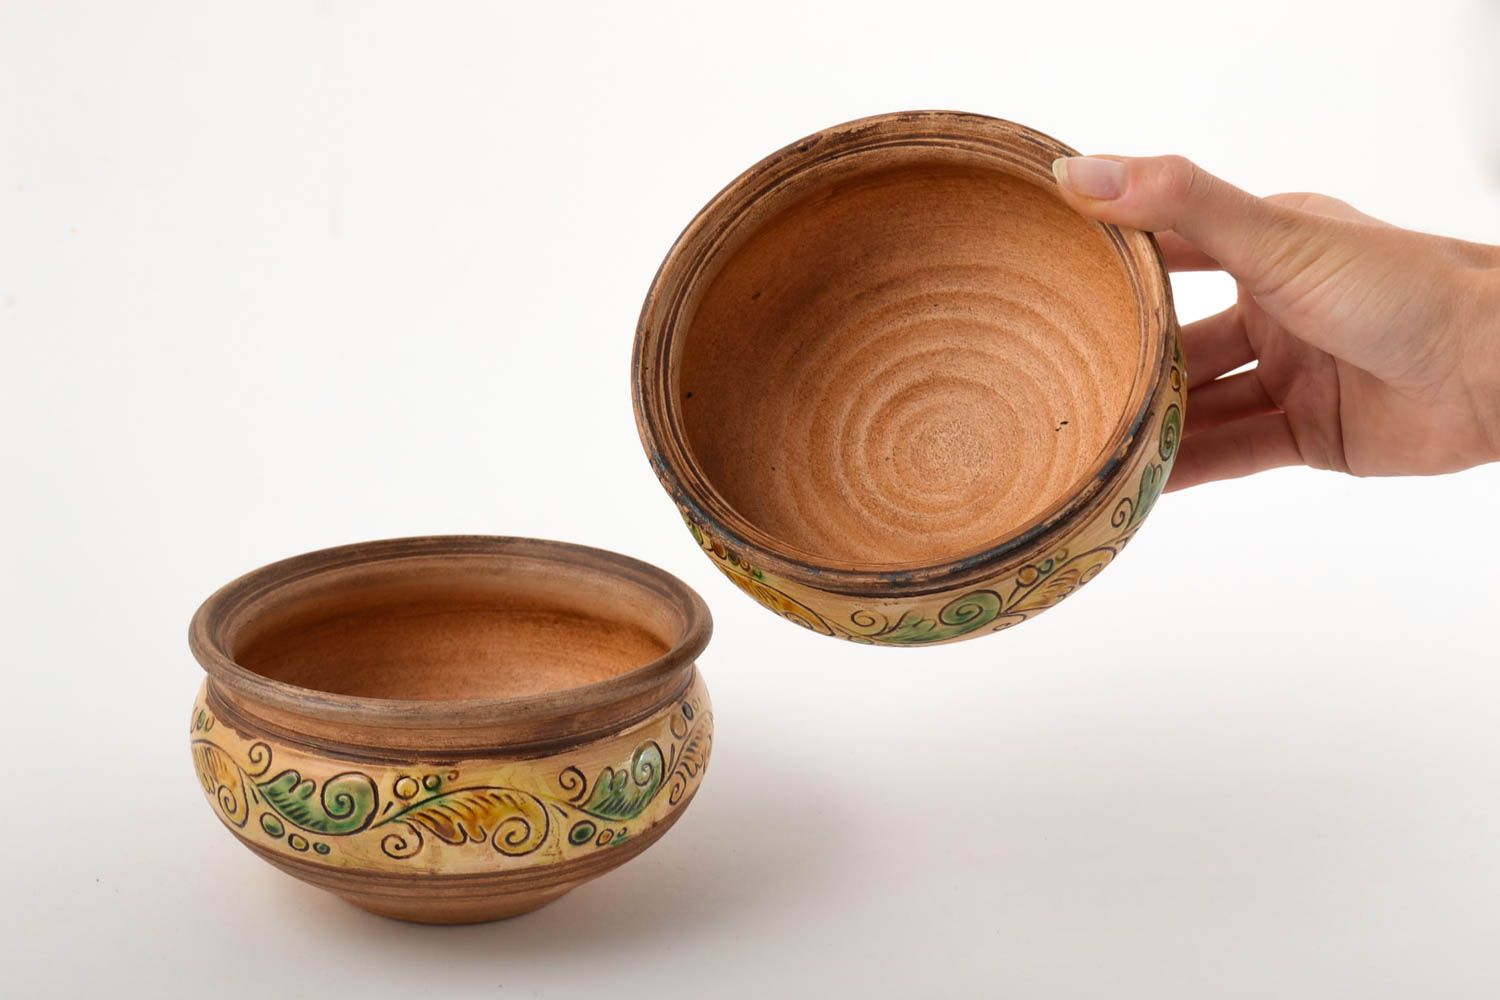 Ceramic bowls 2 ceramic plates handmade stoneware dinnerware dinner dishes photo 5